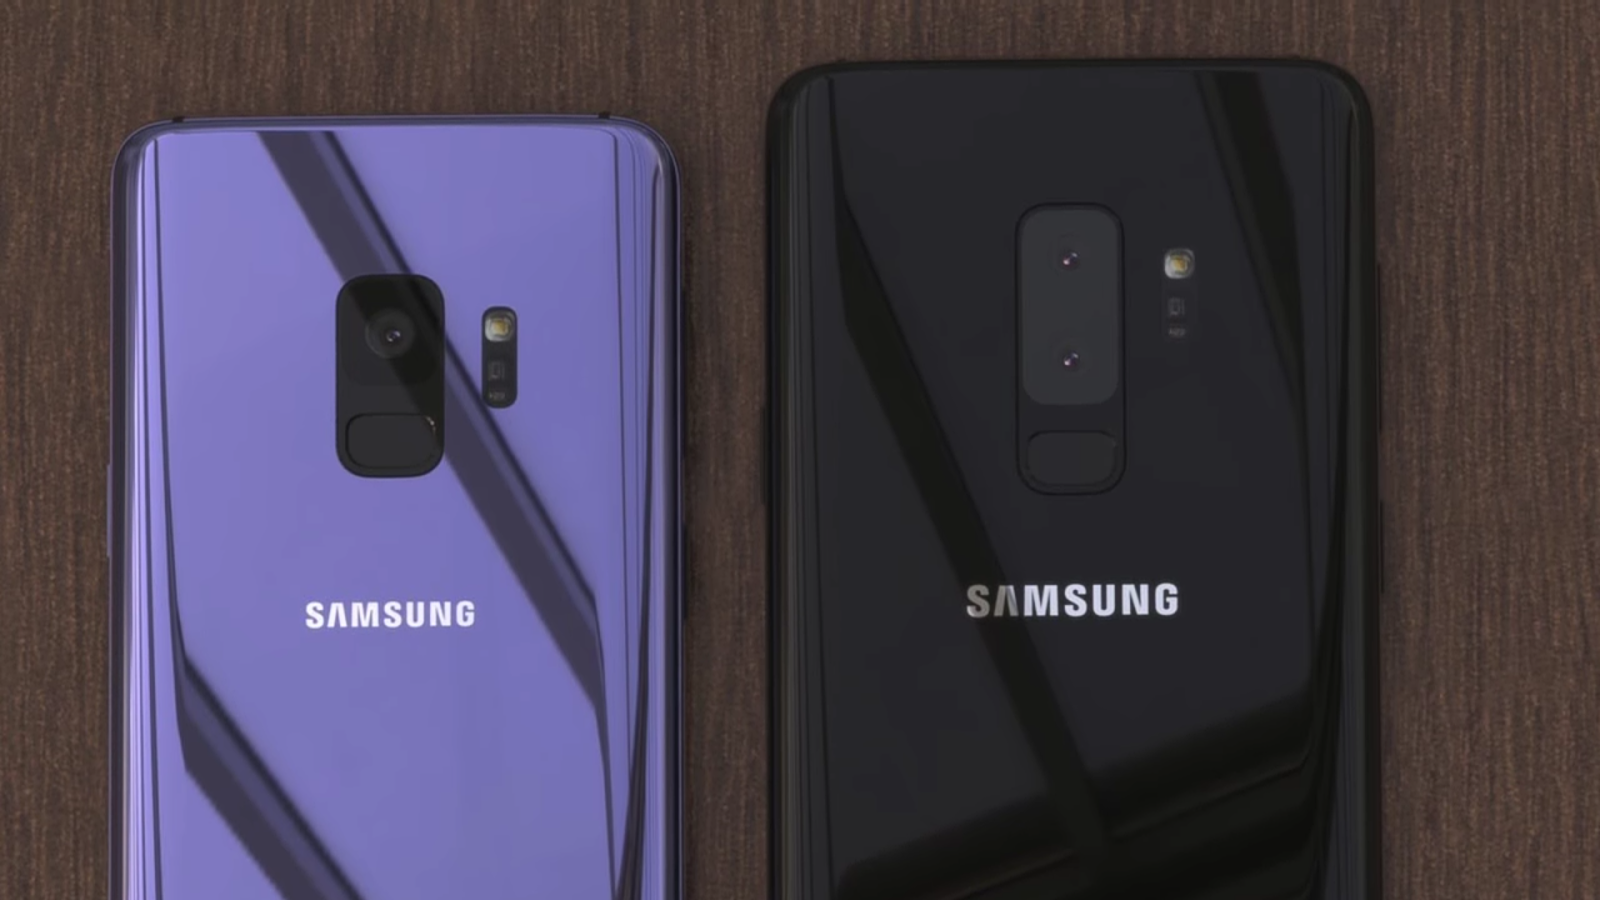 Samsung galaxy s9 cameras